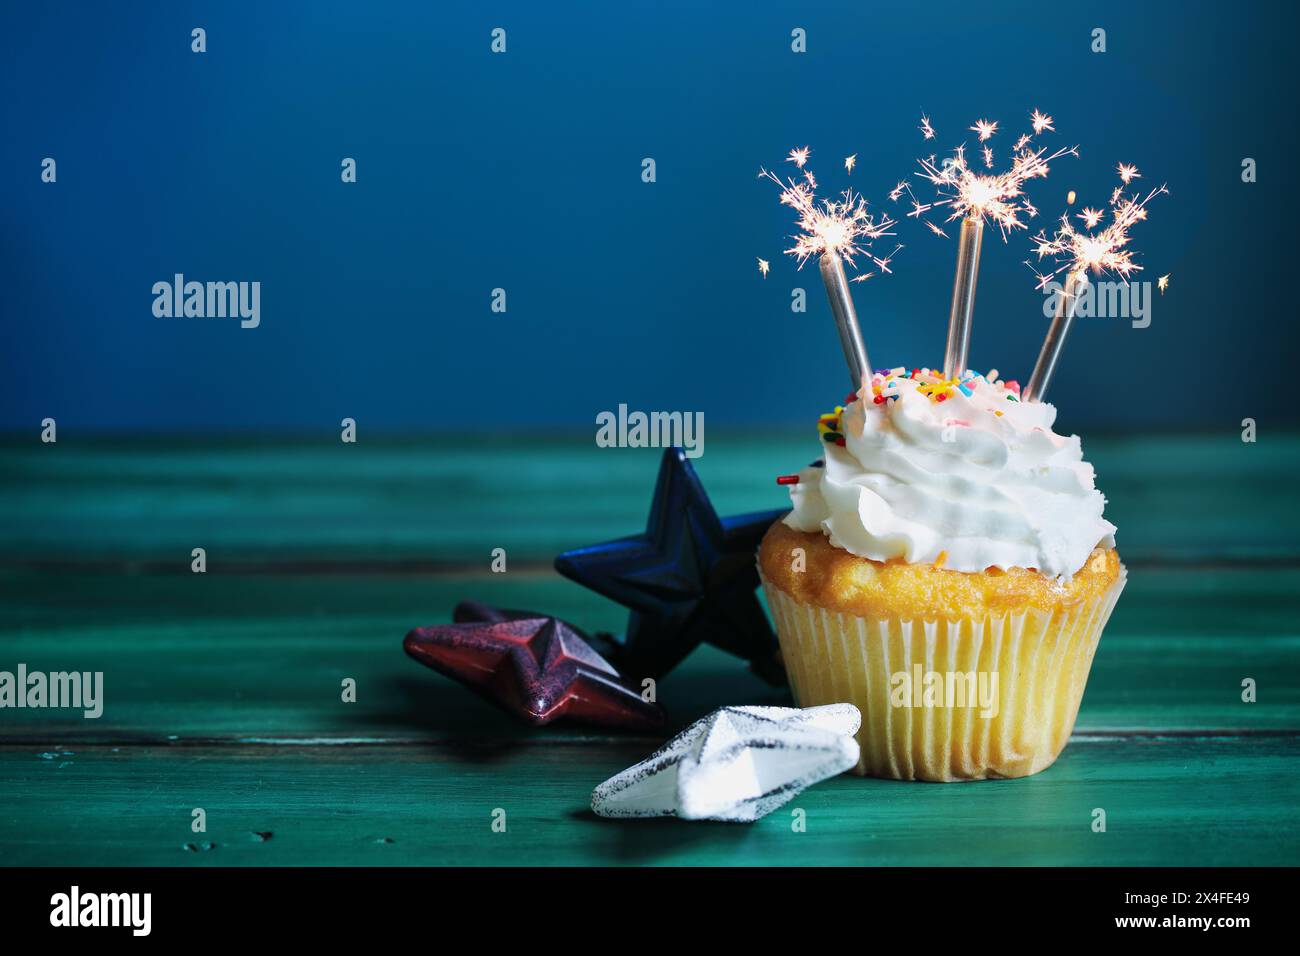 Célébration d'un cupcake à la vanille avec un glaçage à la crème au beurre décoré de saupoudres de sucre et de pétillants pour le 4 juillet. Mise au point sélective avec b flou Banque D'Images